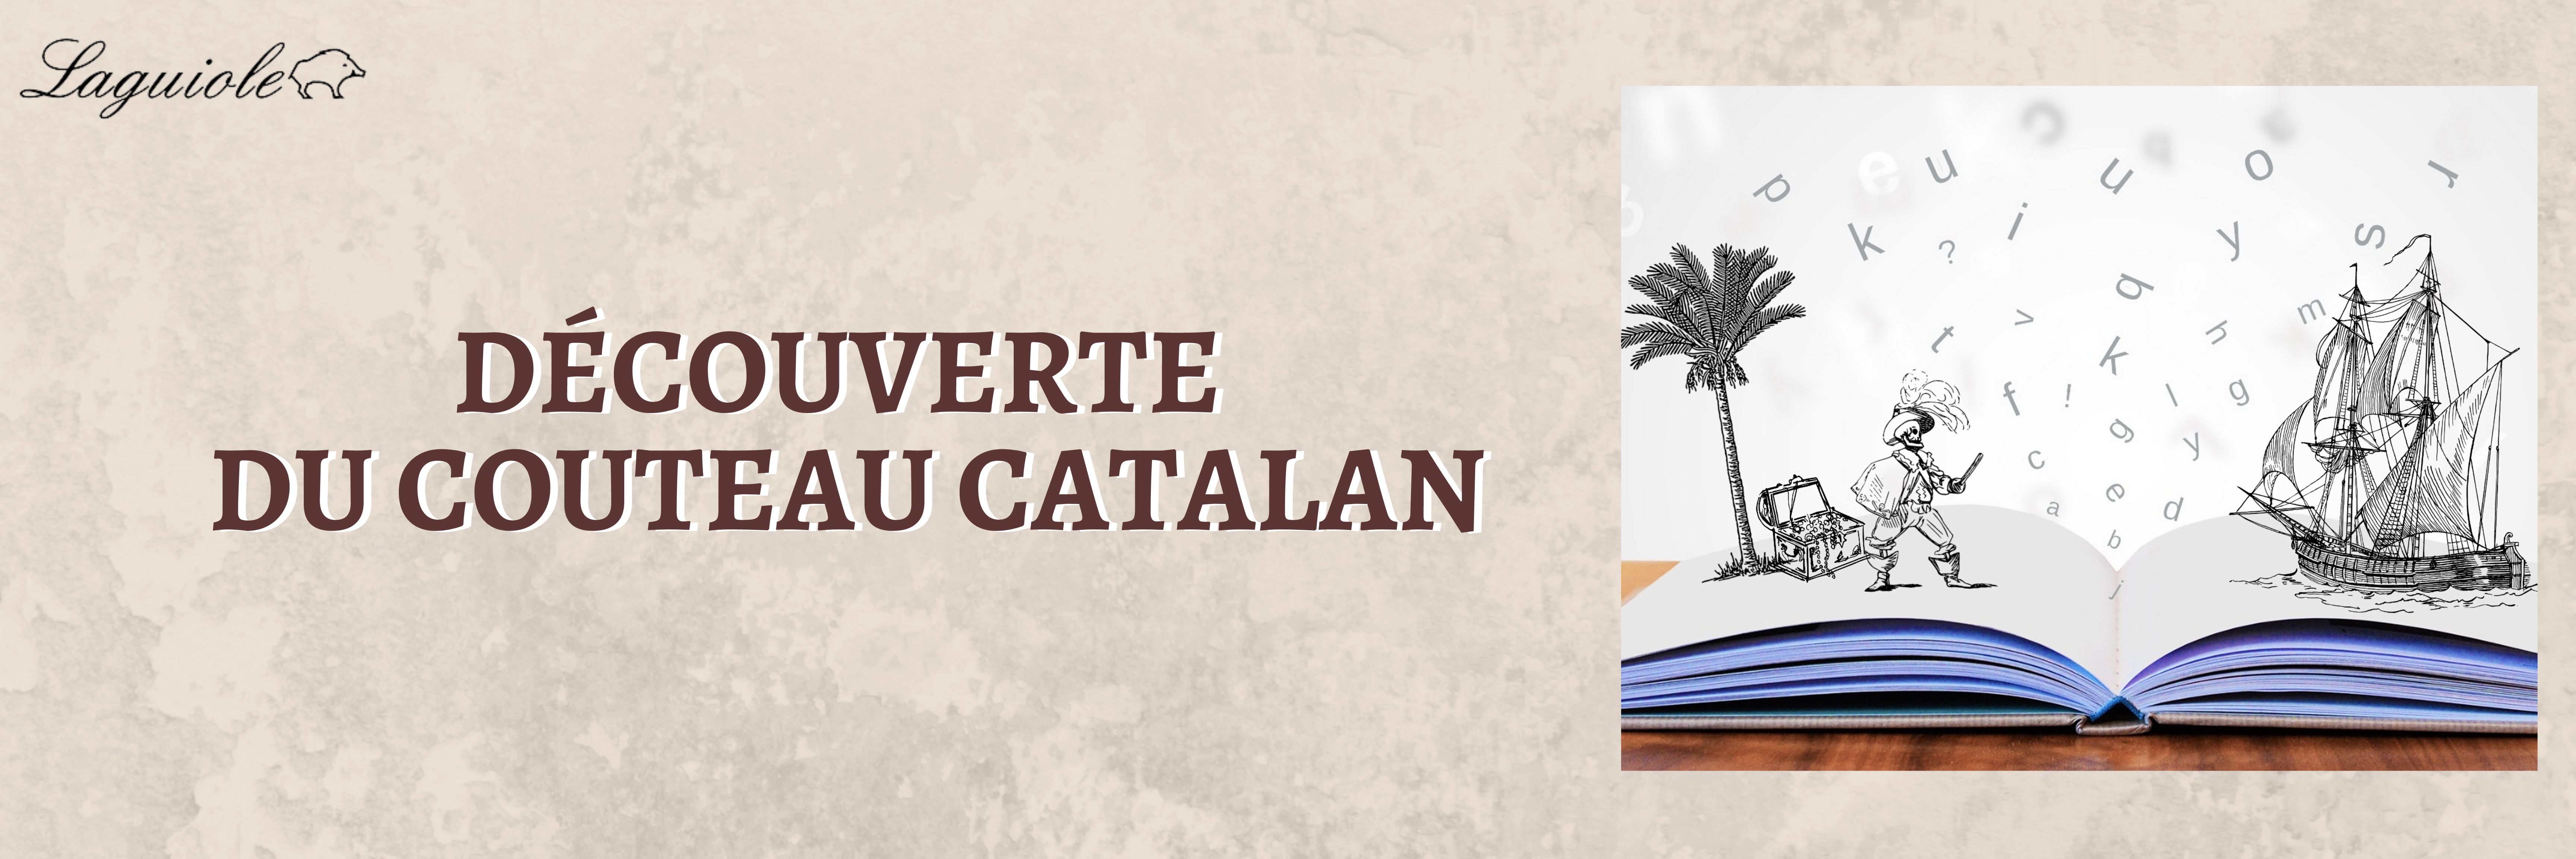 Histoire du couteau catalan